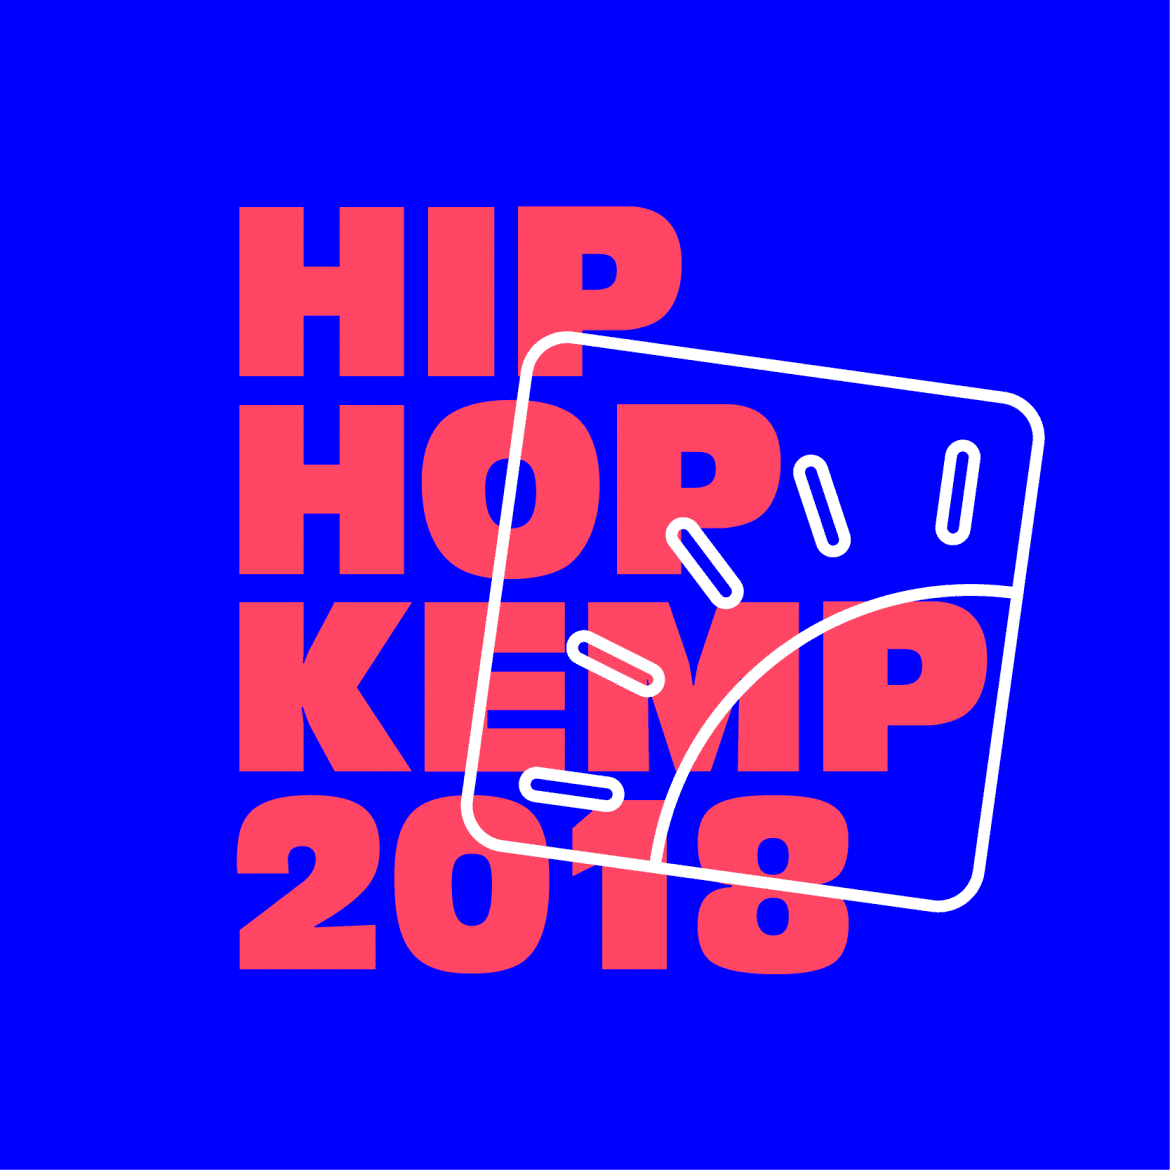 Dziesięciu nowych artystów zasila line-up Hip Hop Kemp 2018